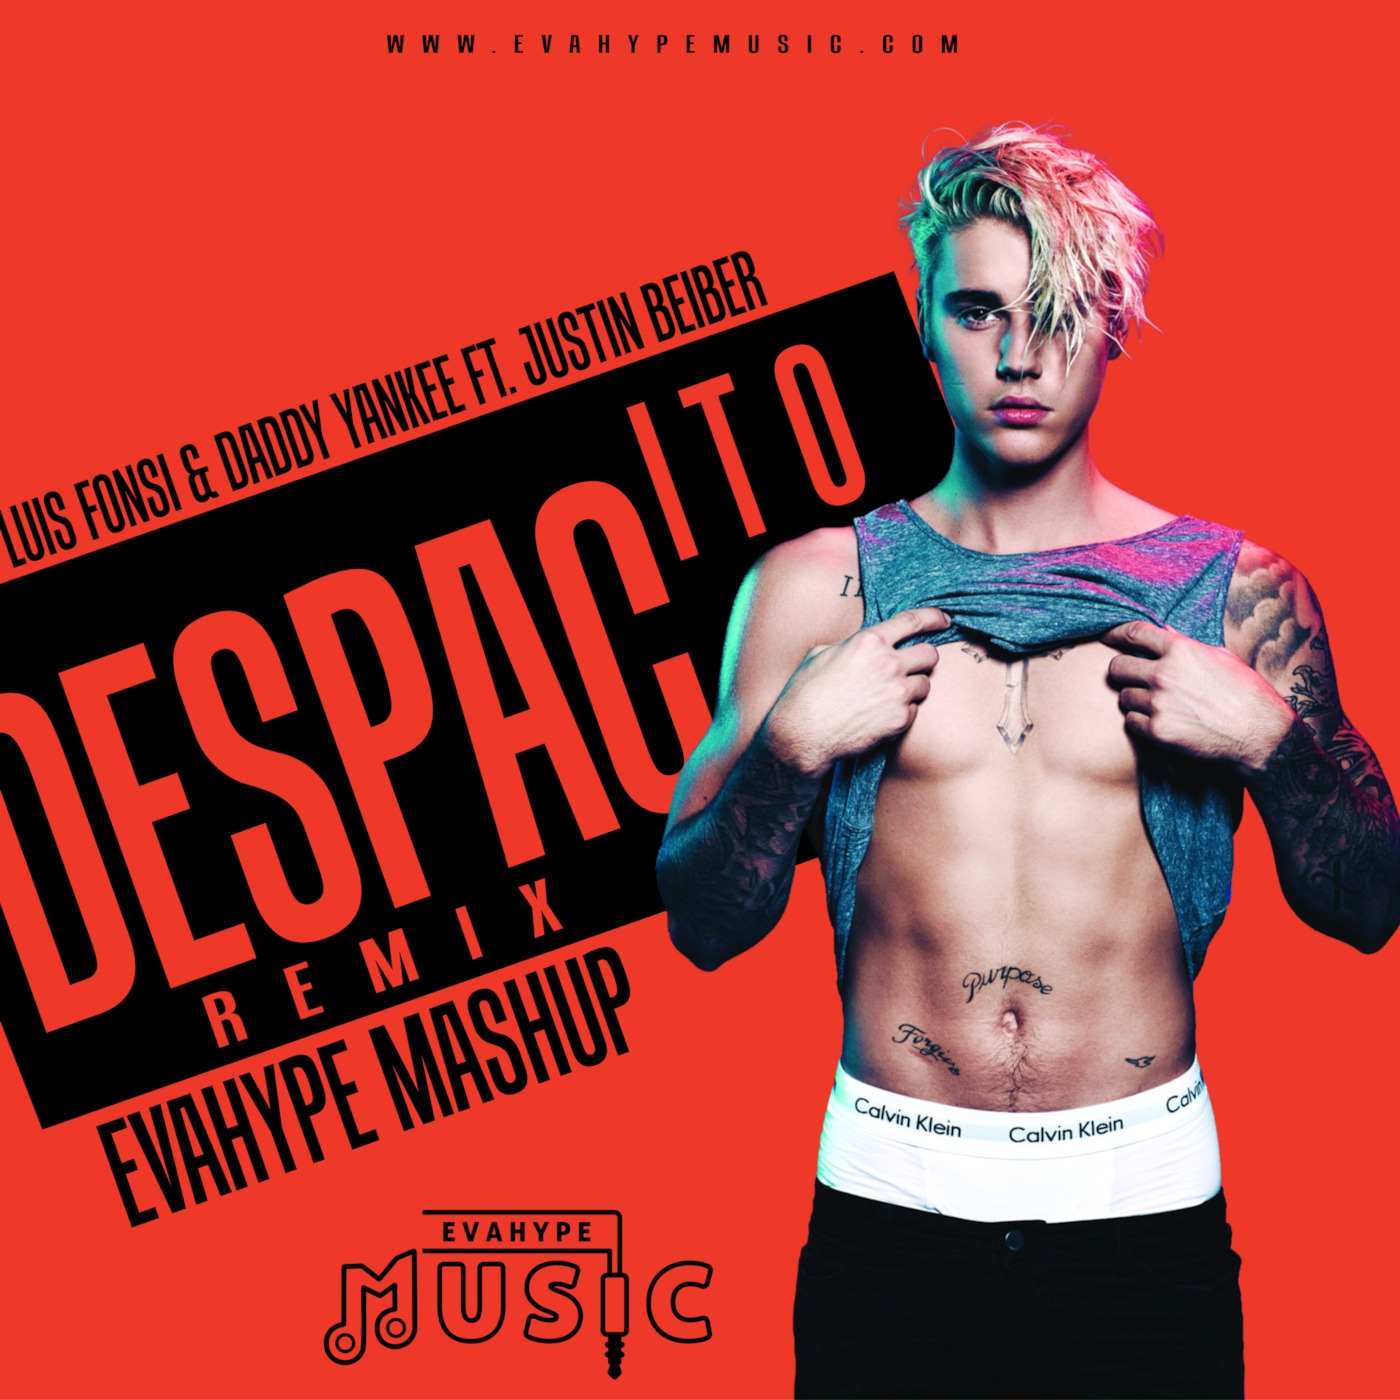 Luis Fonsi & Daddy Yankee Ft. Justin Bieber - Despacito Remix (EvaHype Mashup)